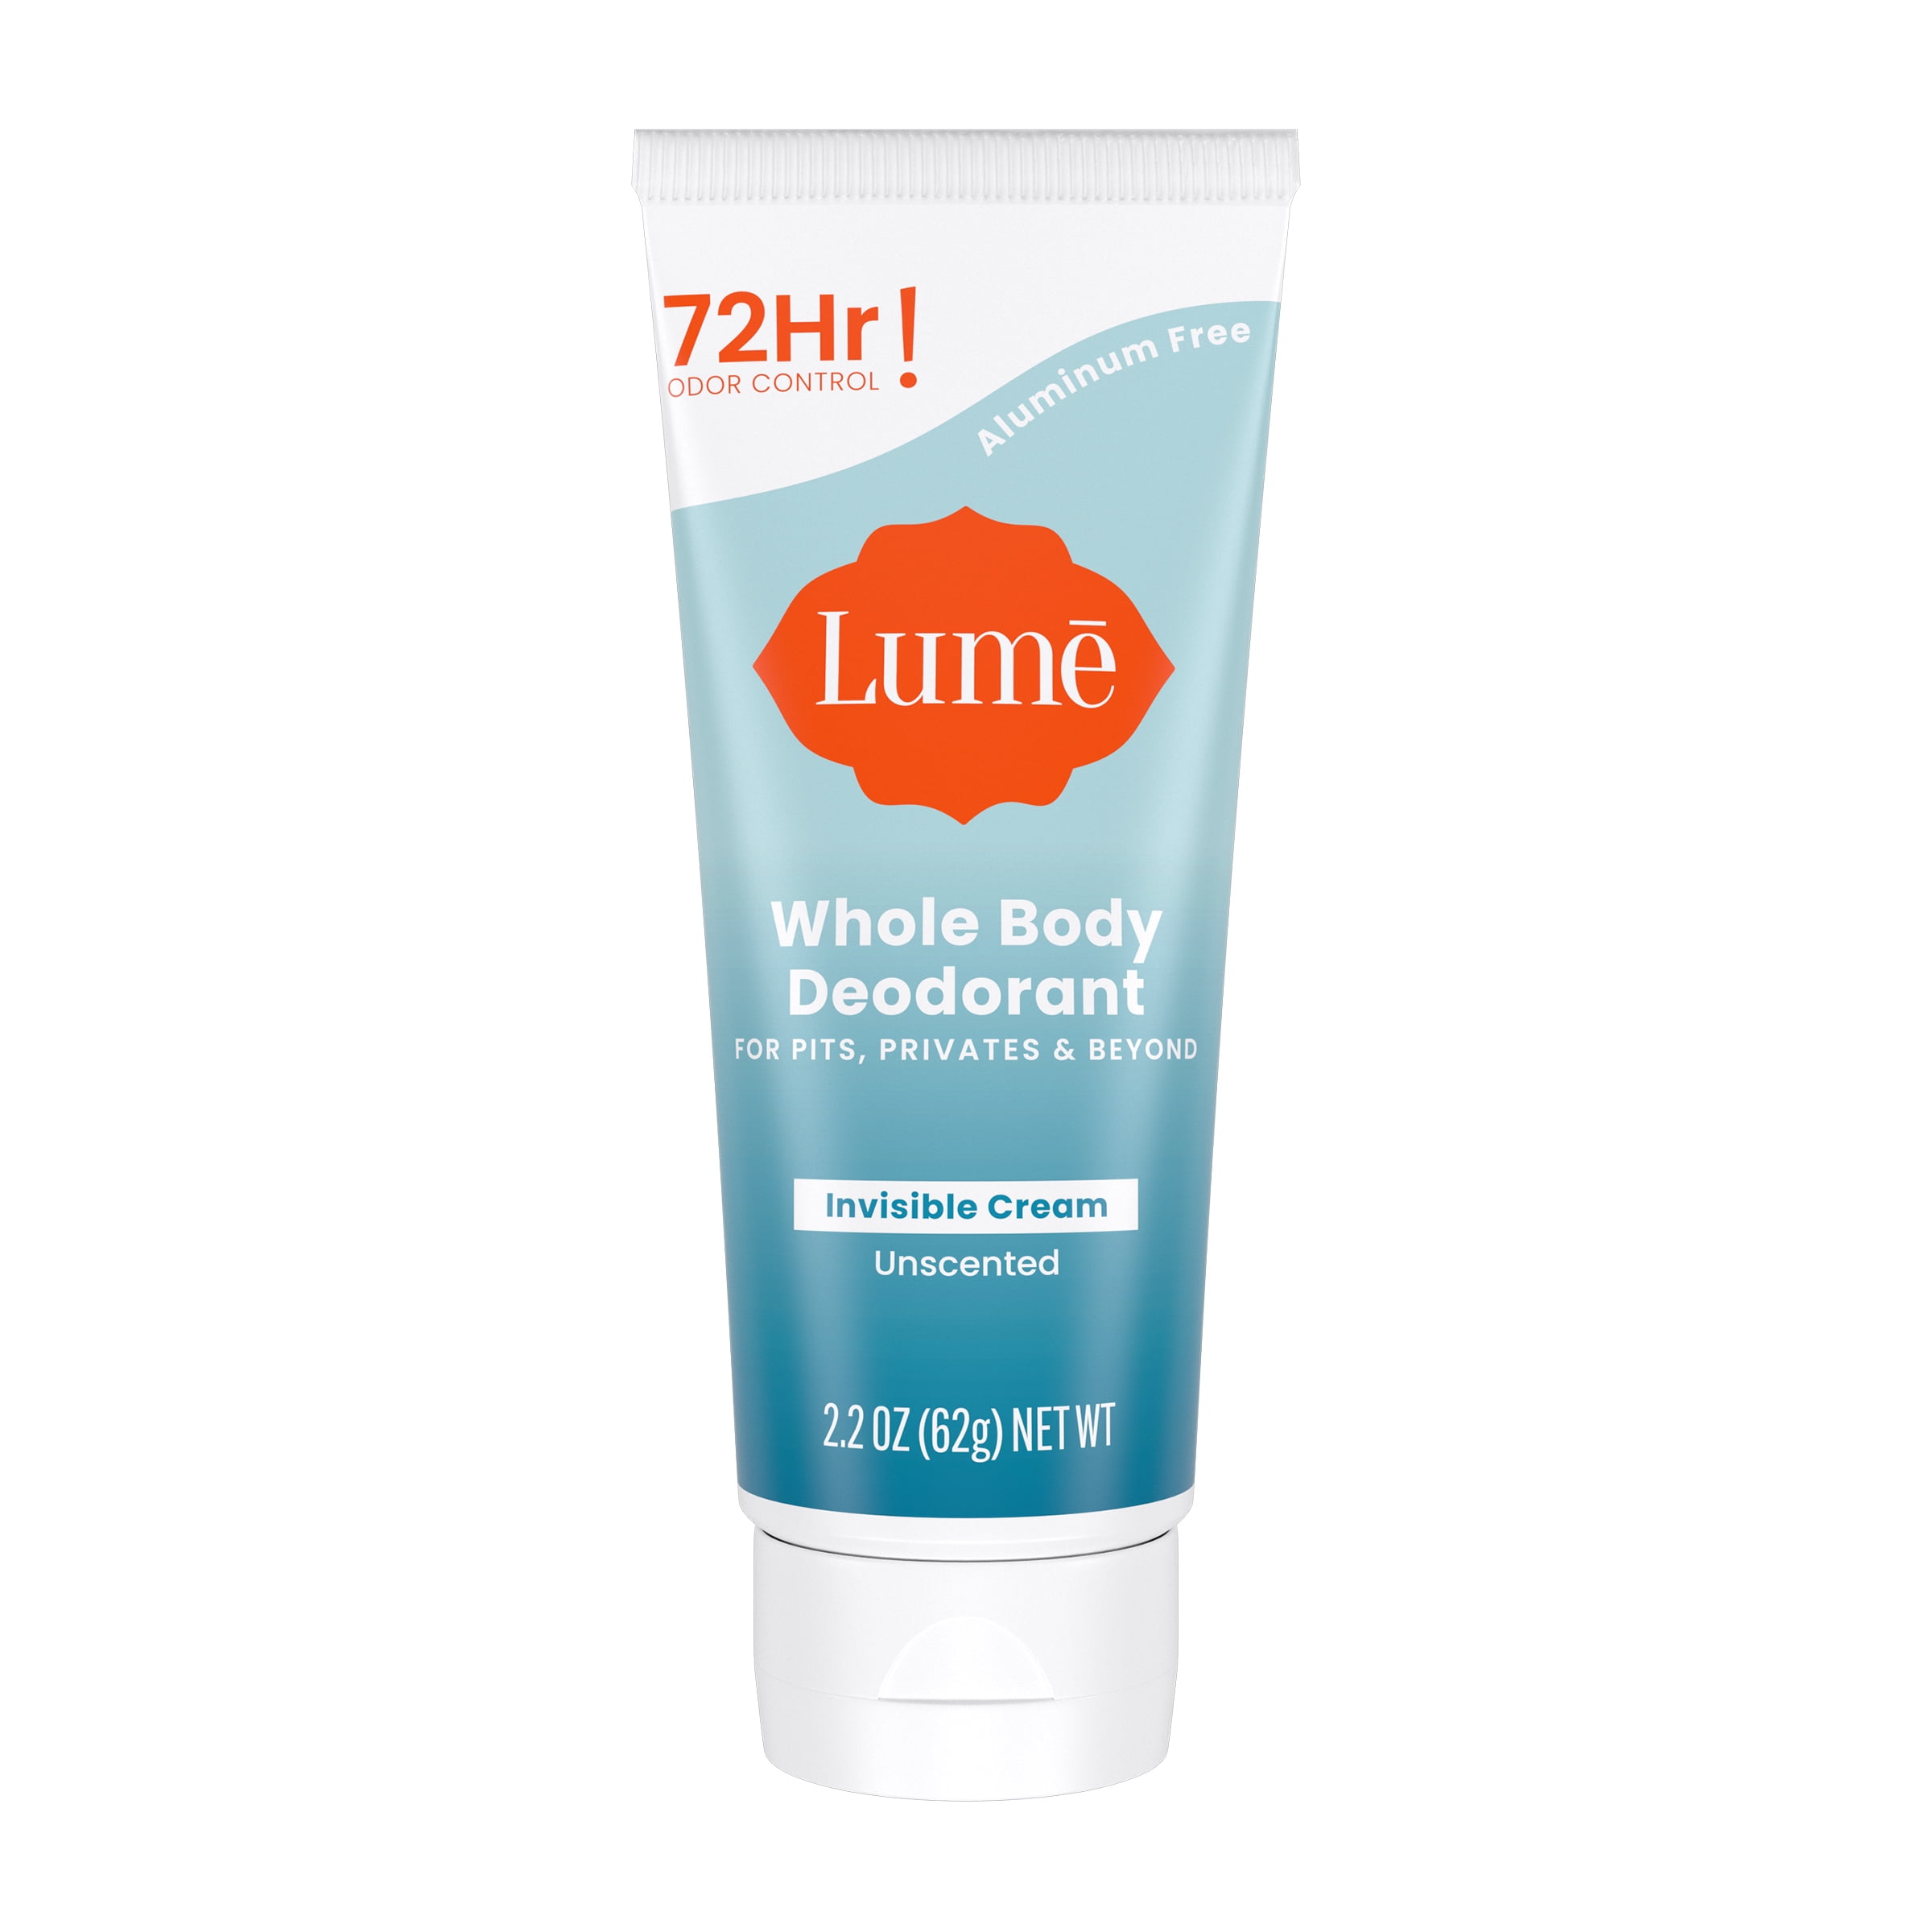 Lume Whole Body Deodorant - Invisible Cream - Unscented - 2.2oz Tube 